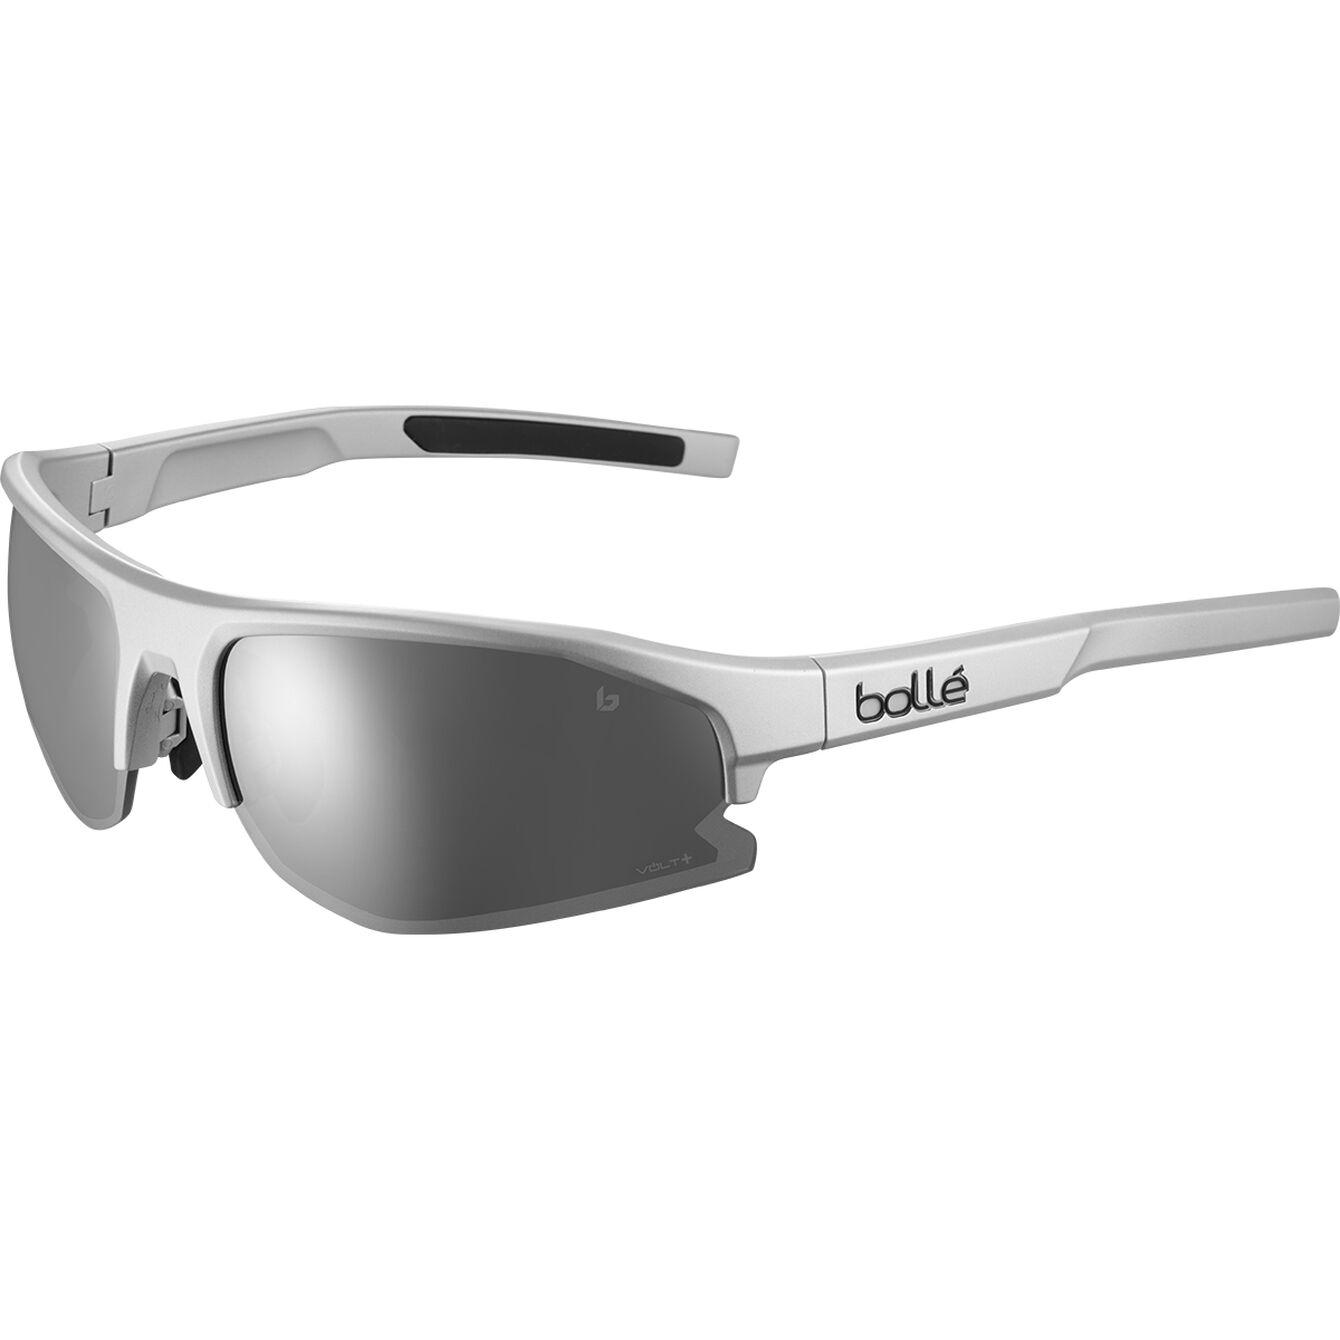 Bolle Bolt 2.0 Silver Matte Cold White Sunglasses - Grey/silver/matte